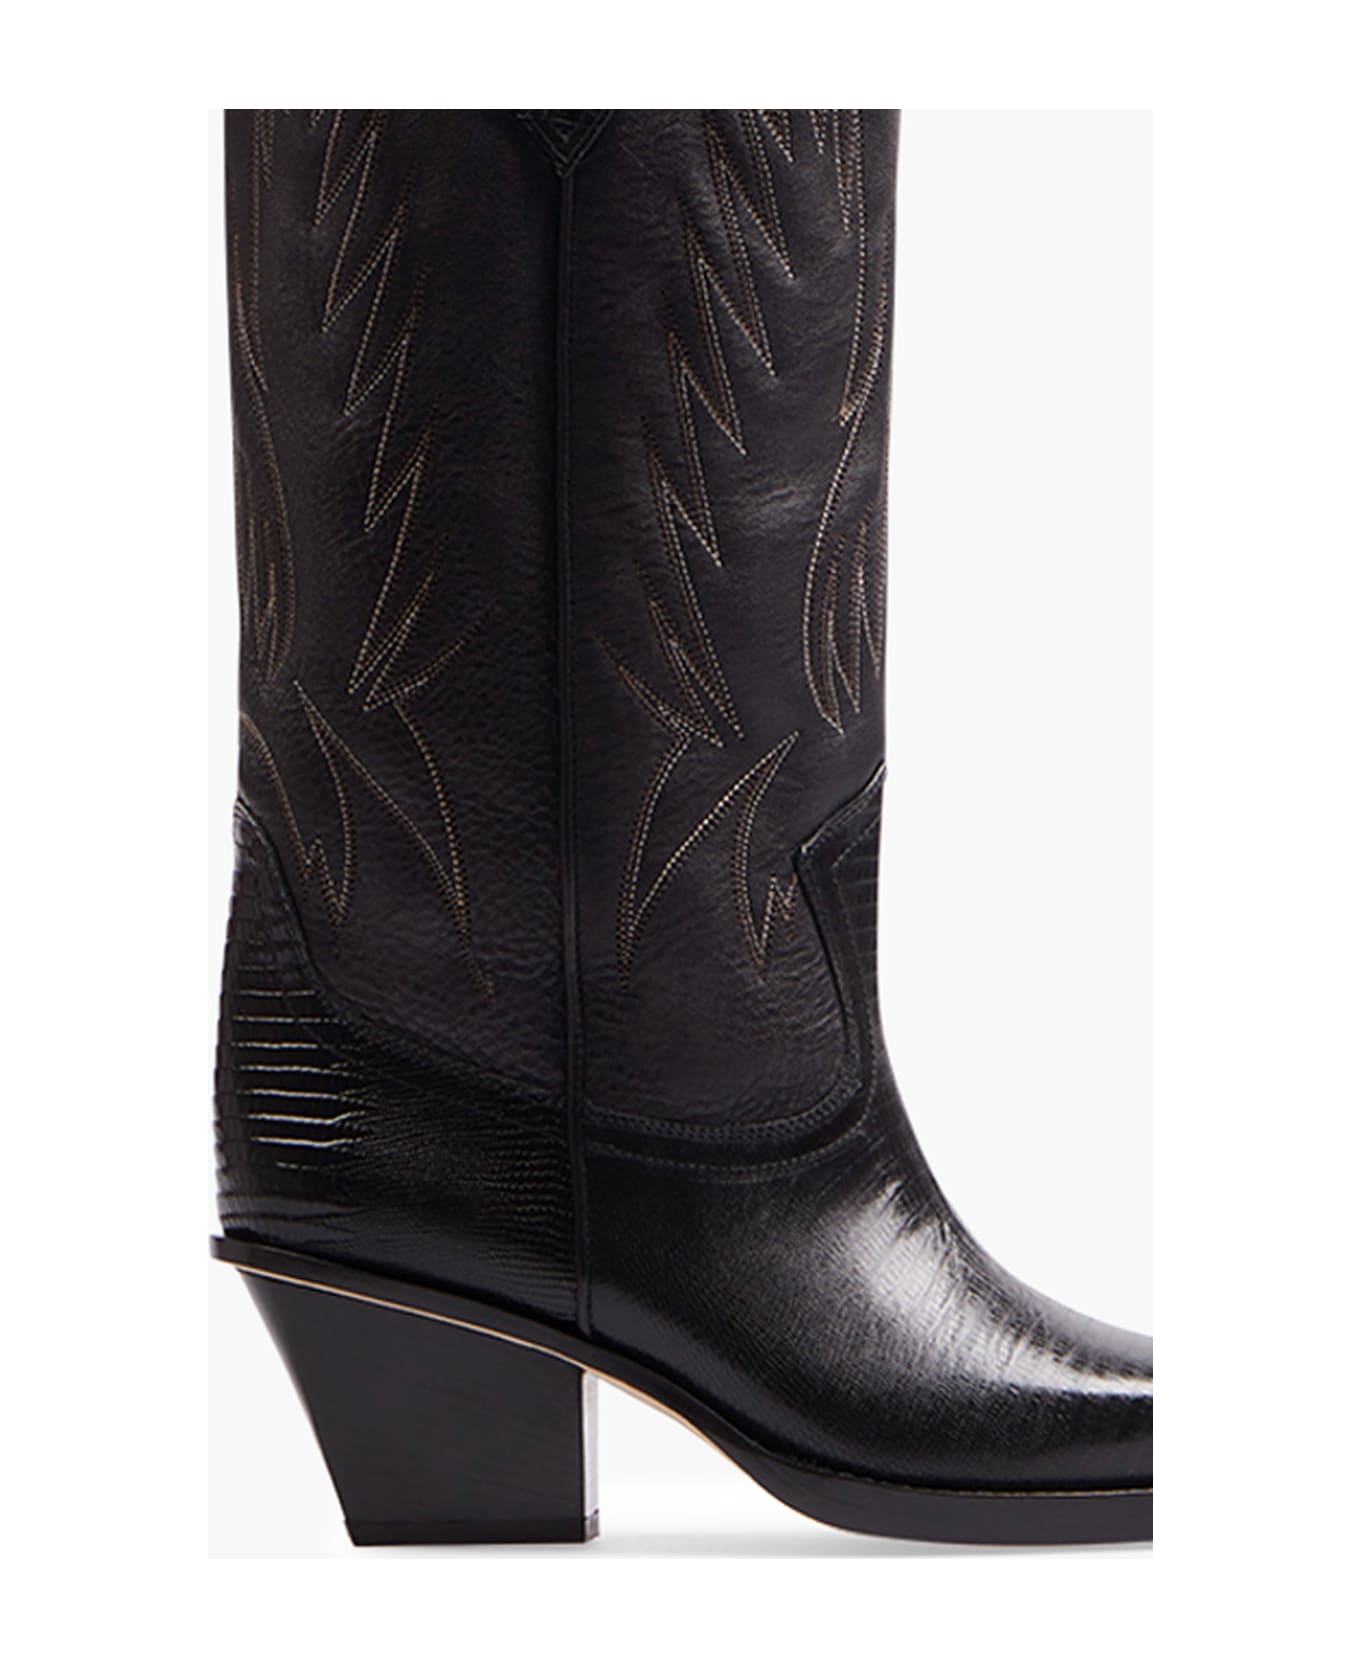 Paris Texas Embroidered Rosario Boots - BLACK